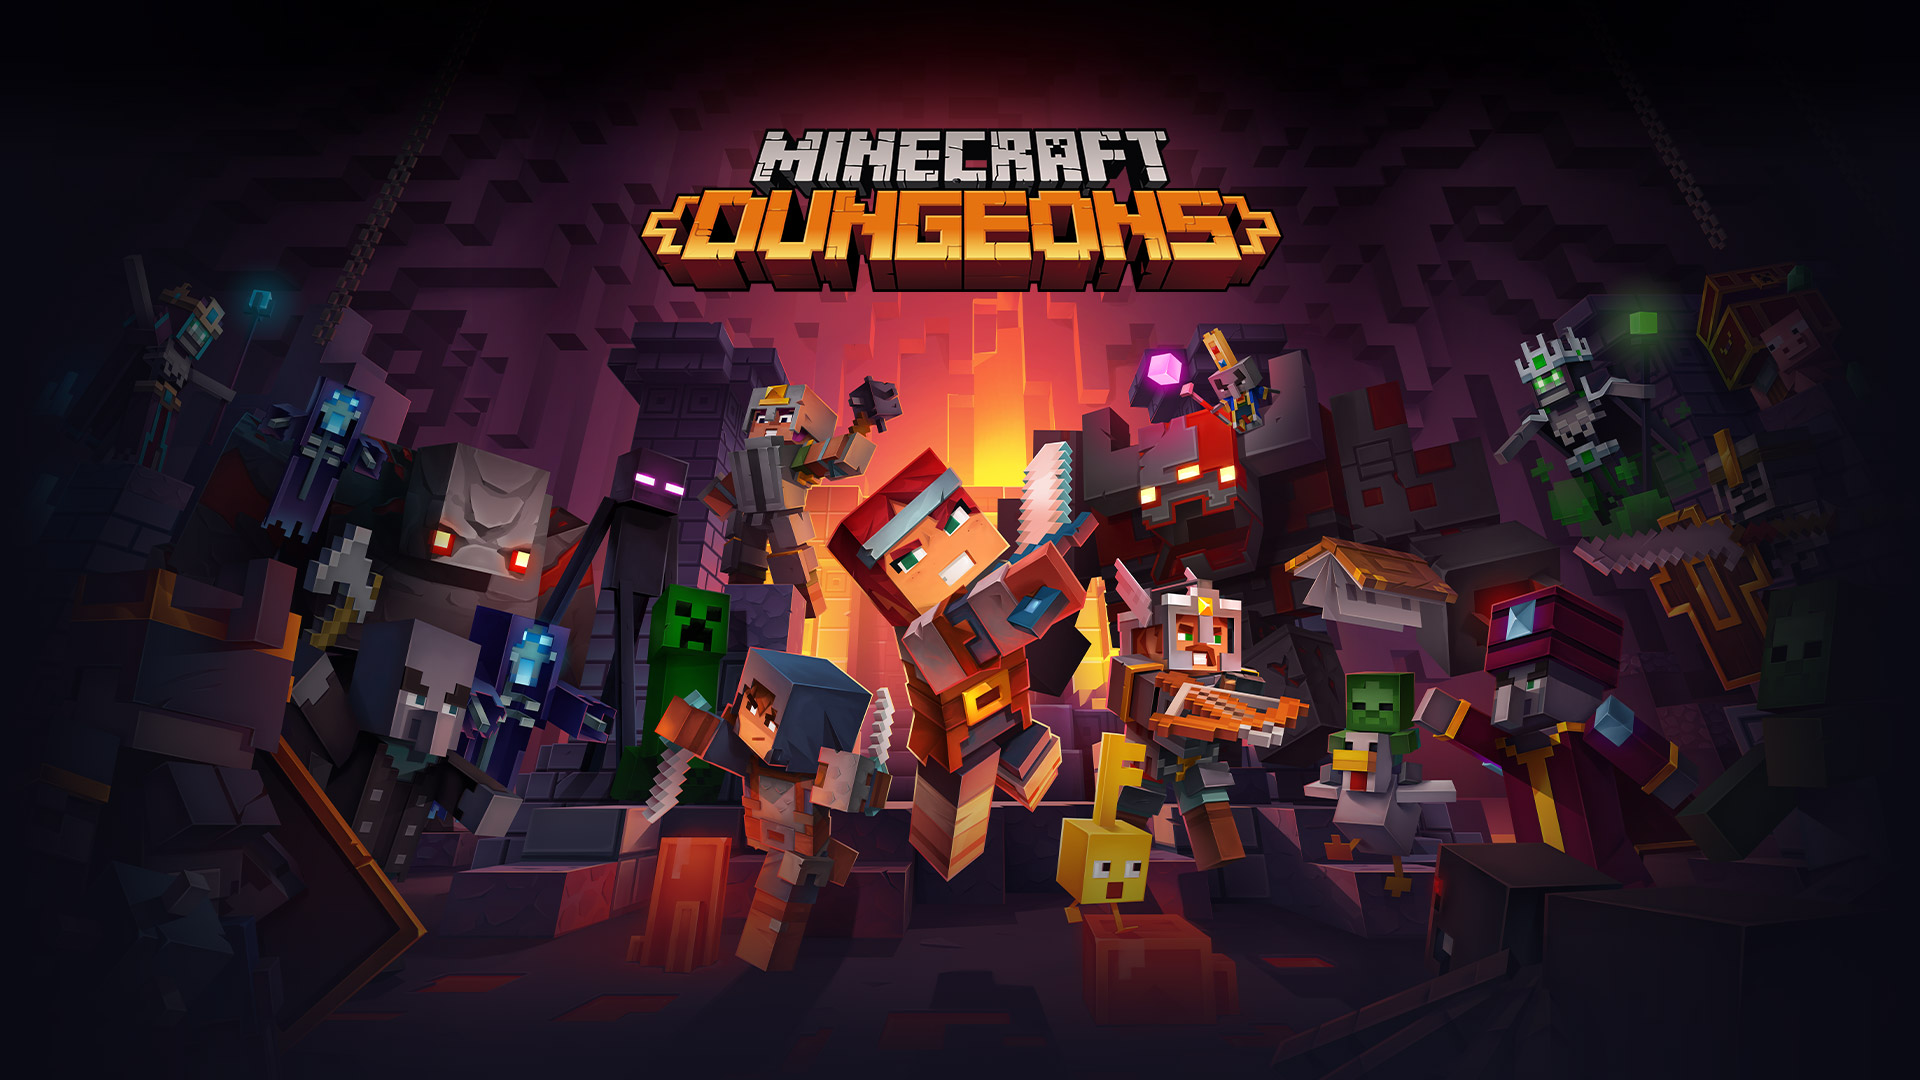 Logo hry Minecraft Dungeons pred všetkými postavami hry Minecraft bojujúcimi v kobke